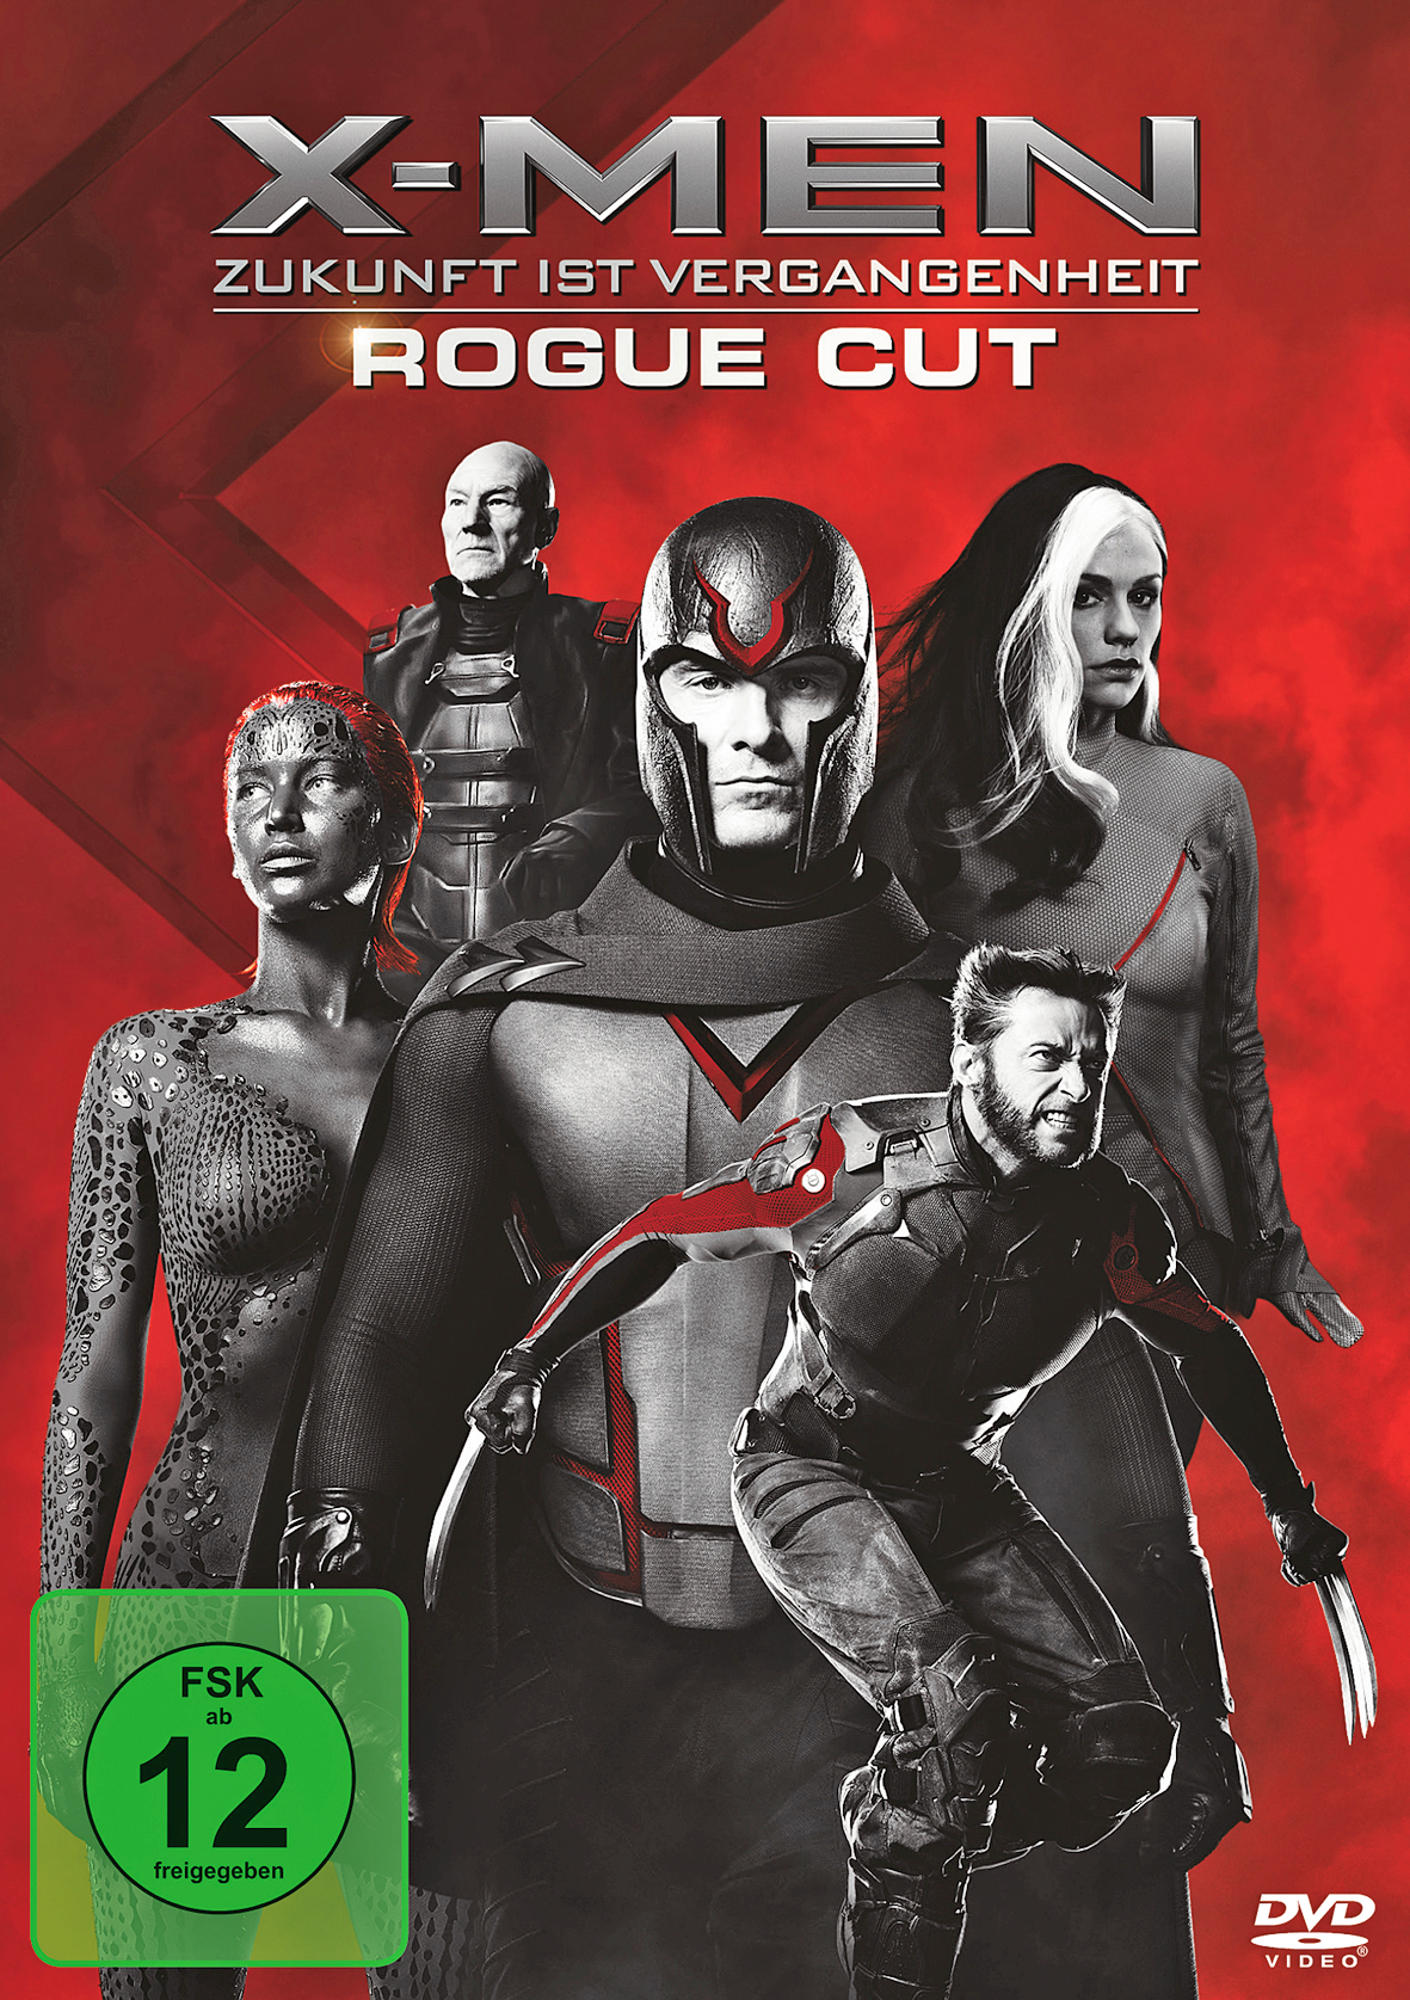 - Vergangenheit X-Men: Zukunft ist DVD Rogue Cut